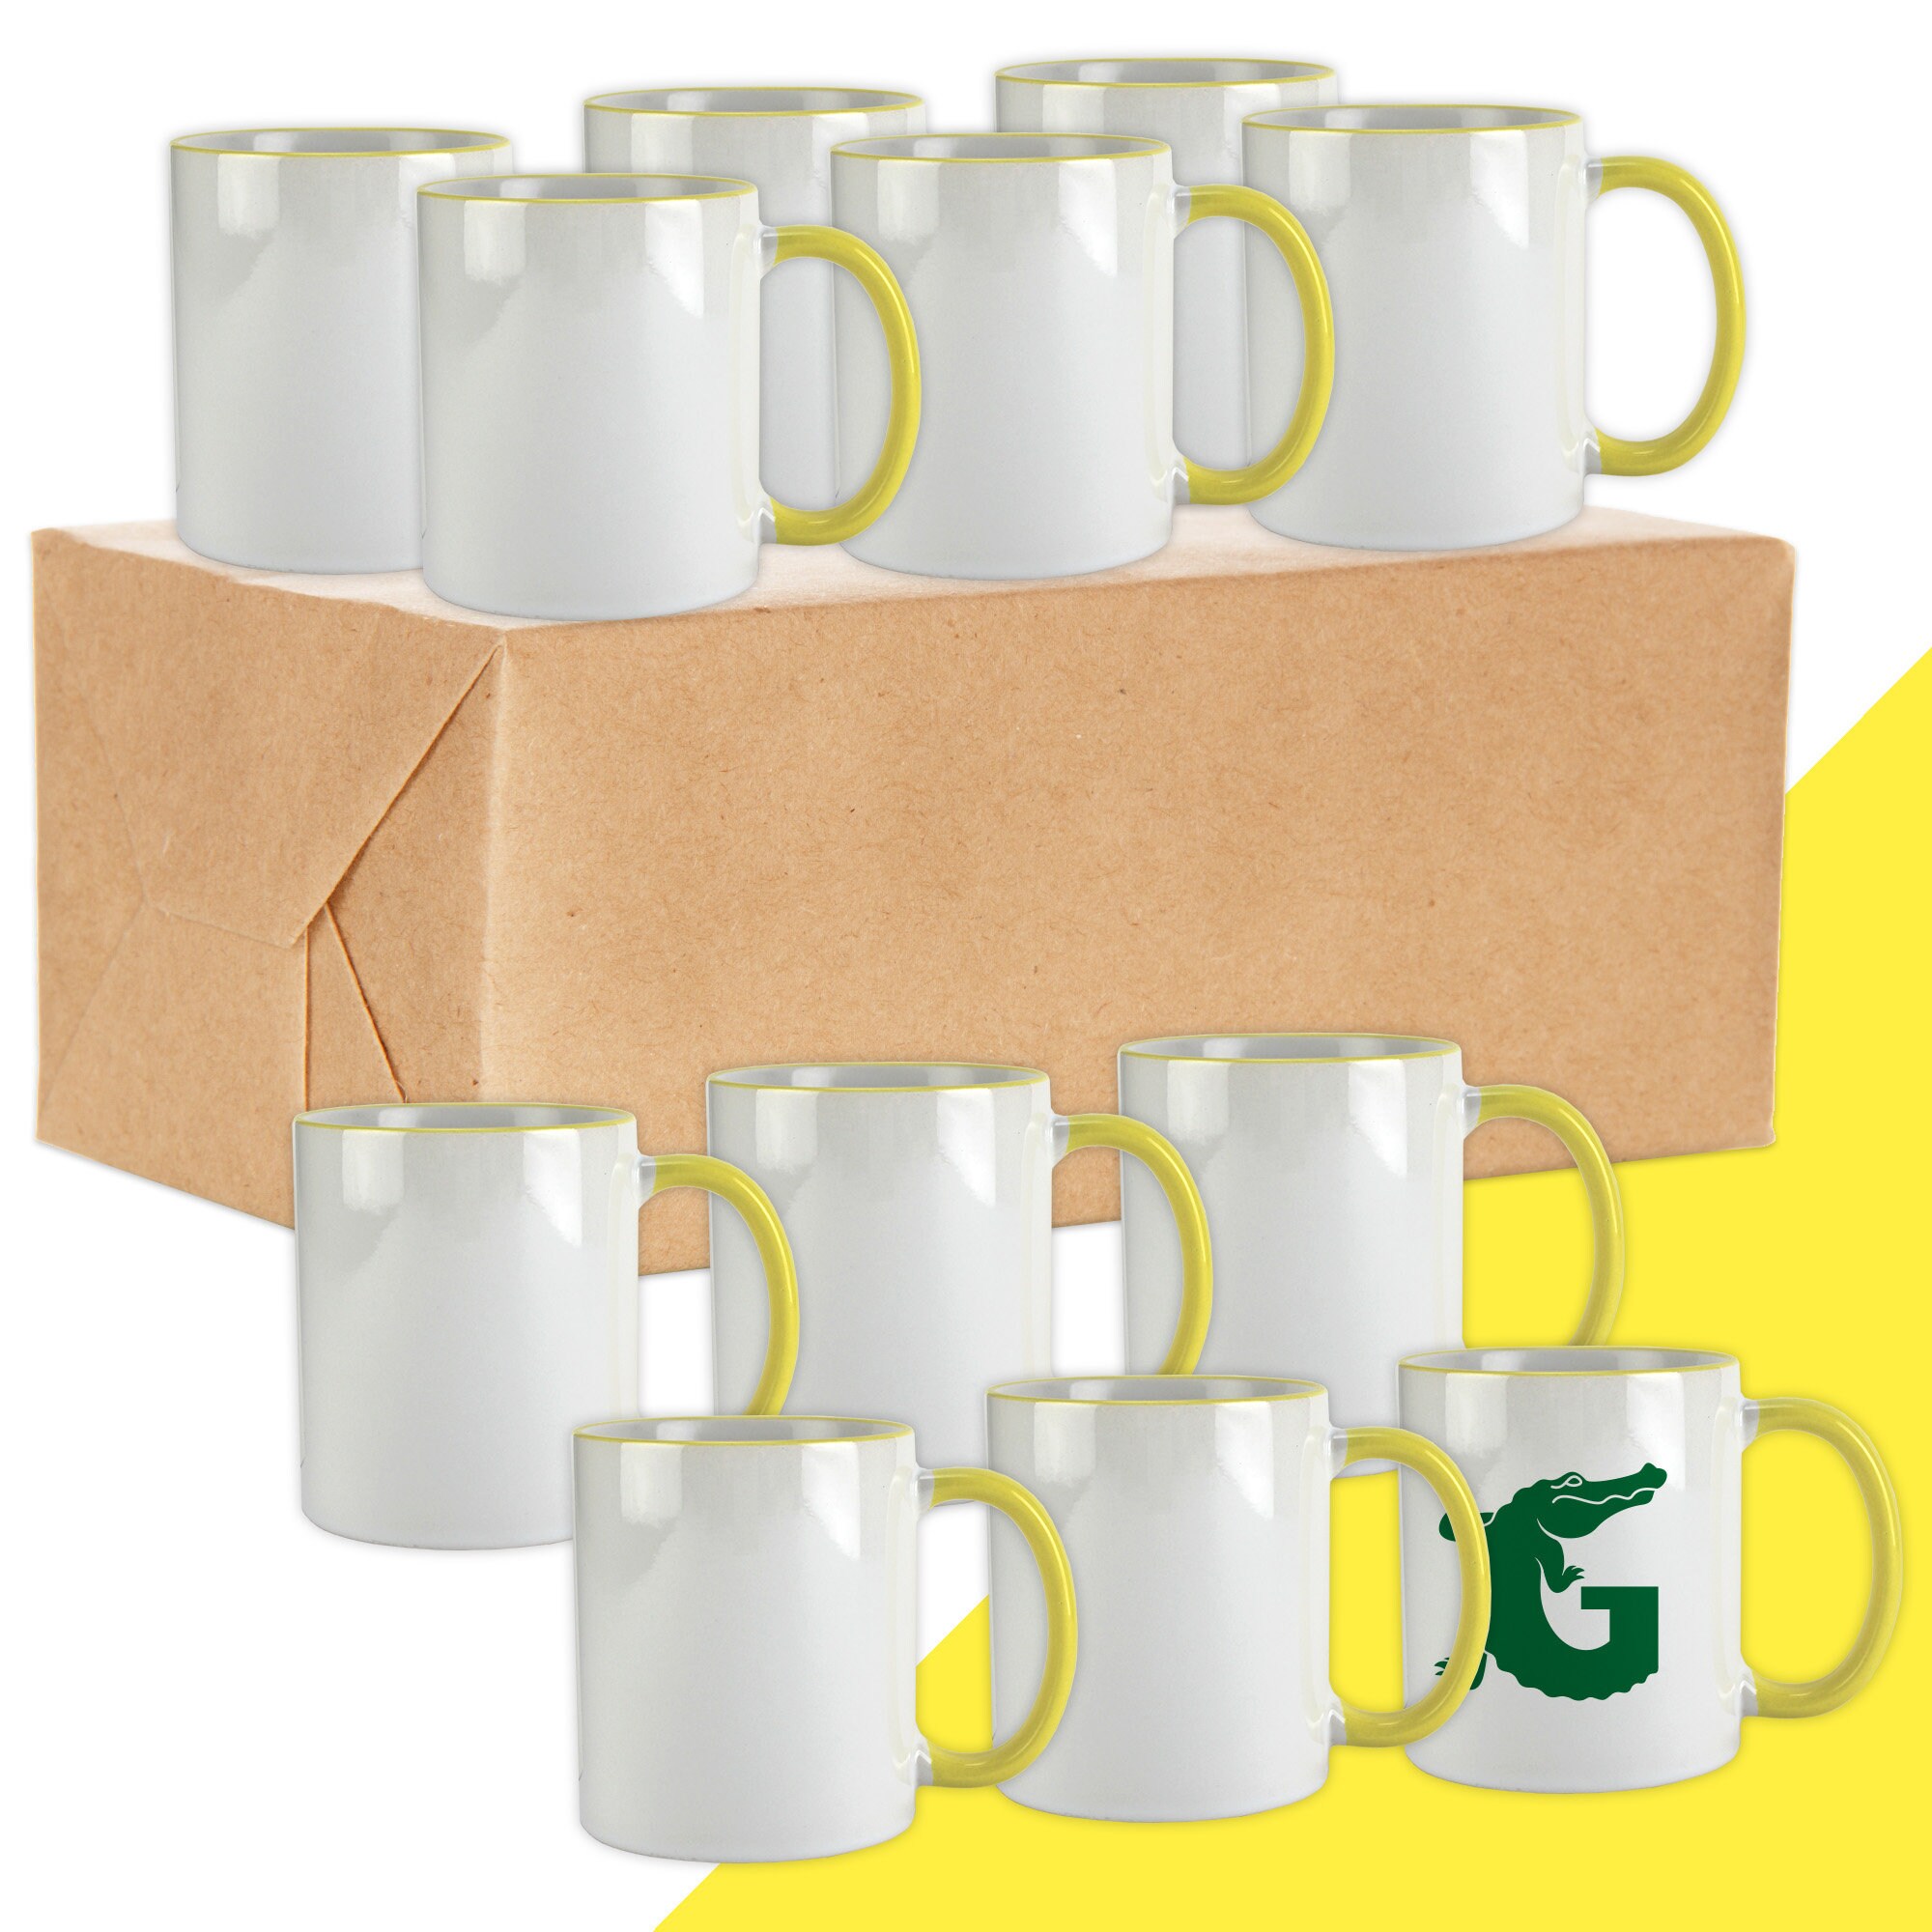 Gator Bulk Mugs Sublimation Blank Ceramic Mug White, Sublimation Mugs 15oz  (Case of 36)